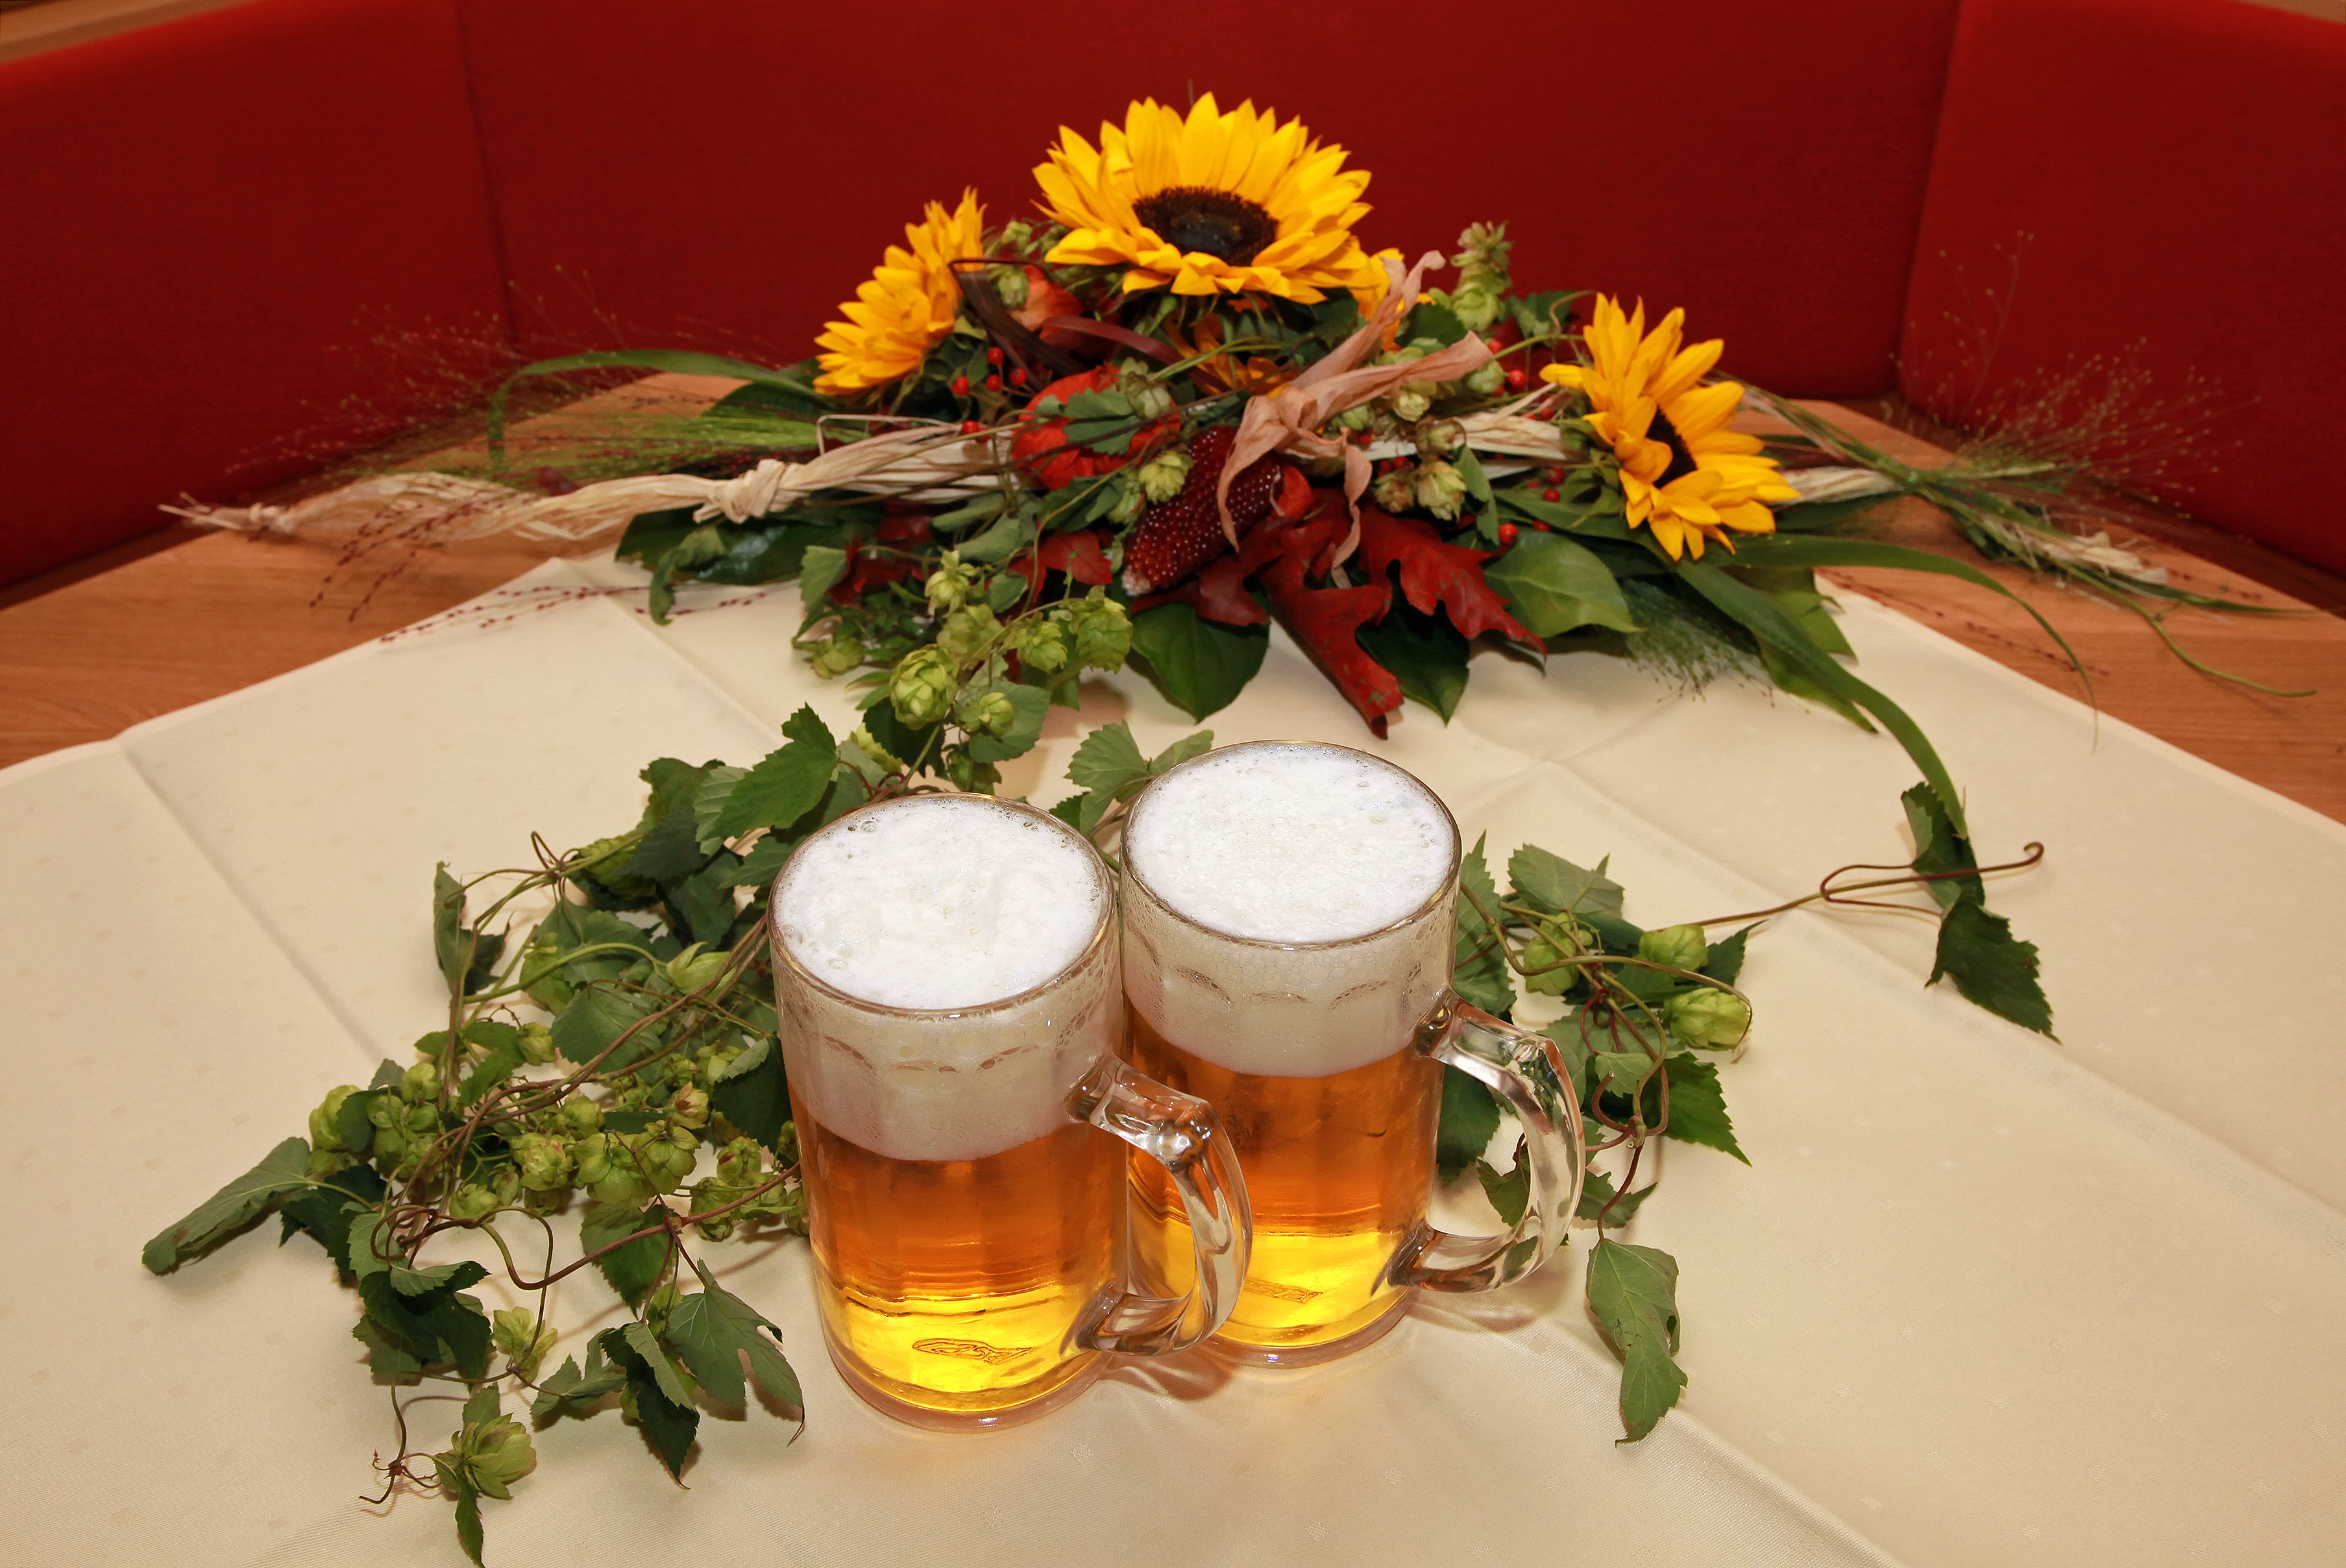 Gleich zwei Brauereien befinden sich in der Verbandsgemeinde Bellheim: Bellheimer Brauerei und Ottersheimer Bärenbräu